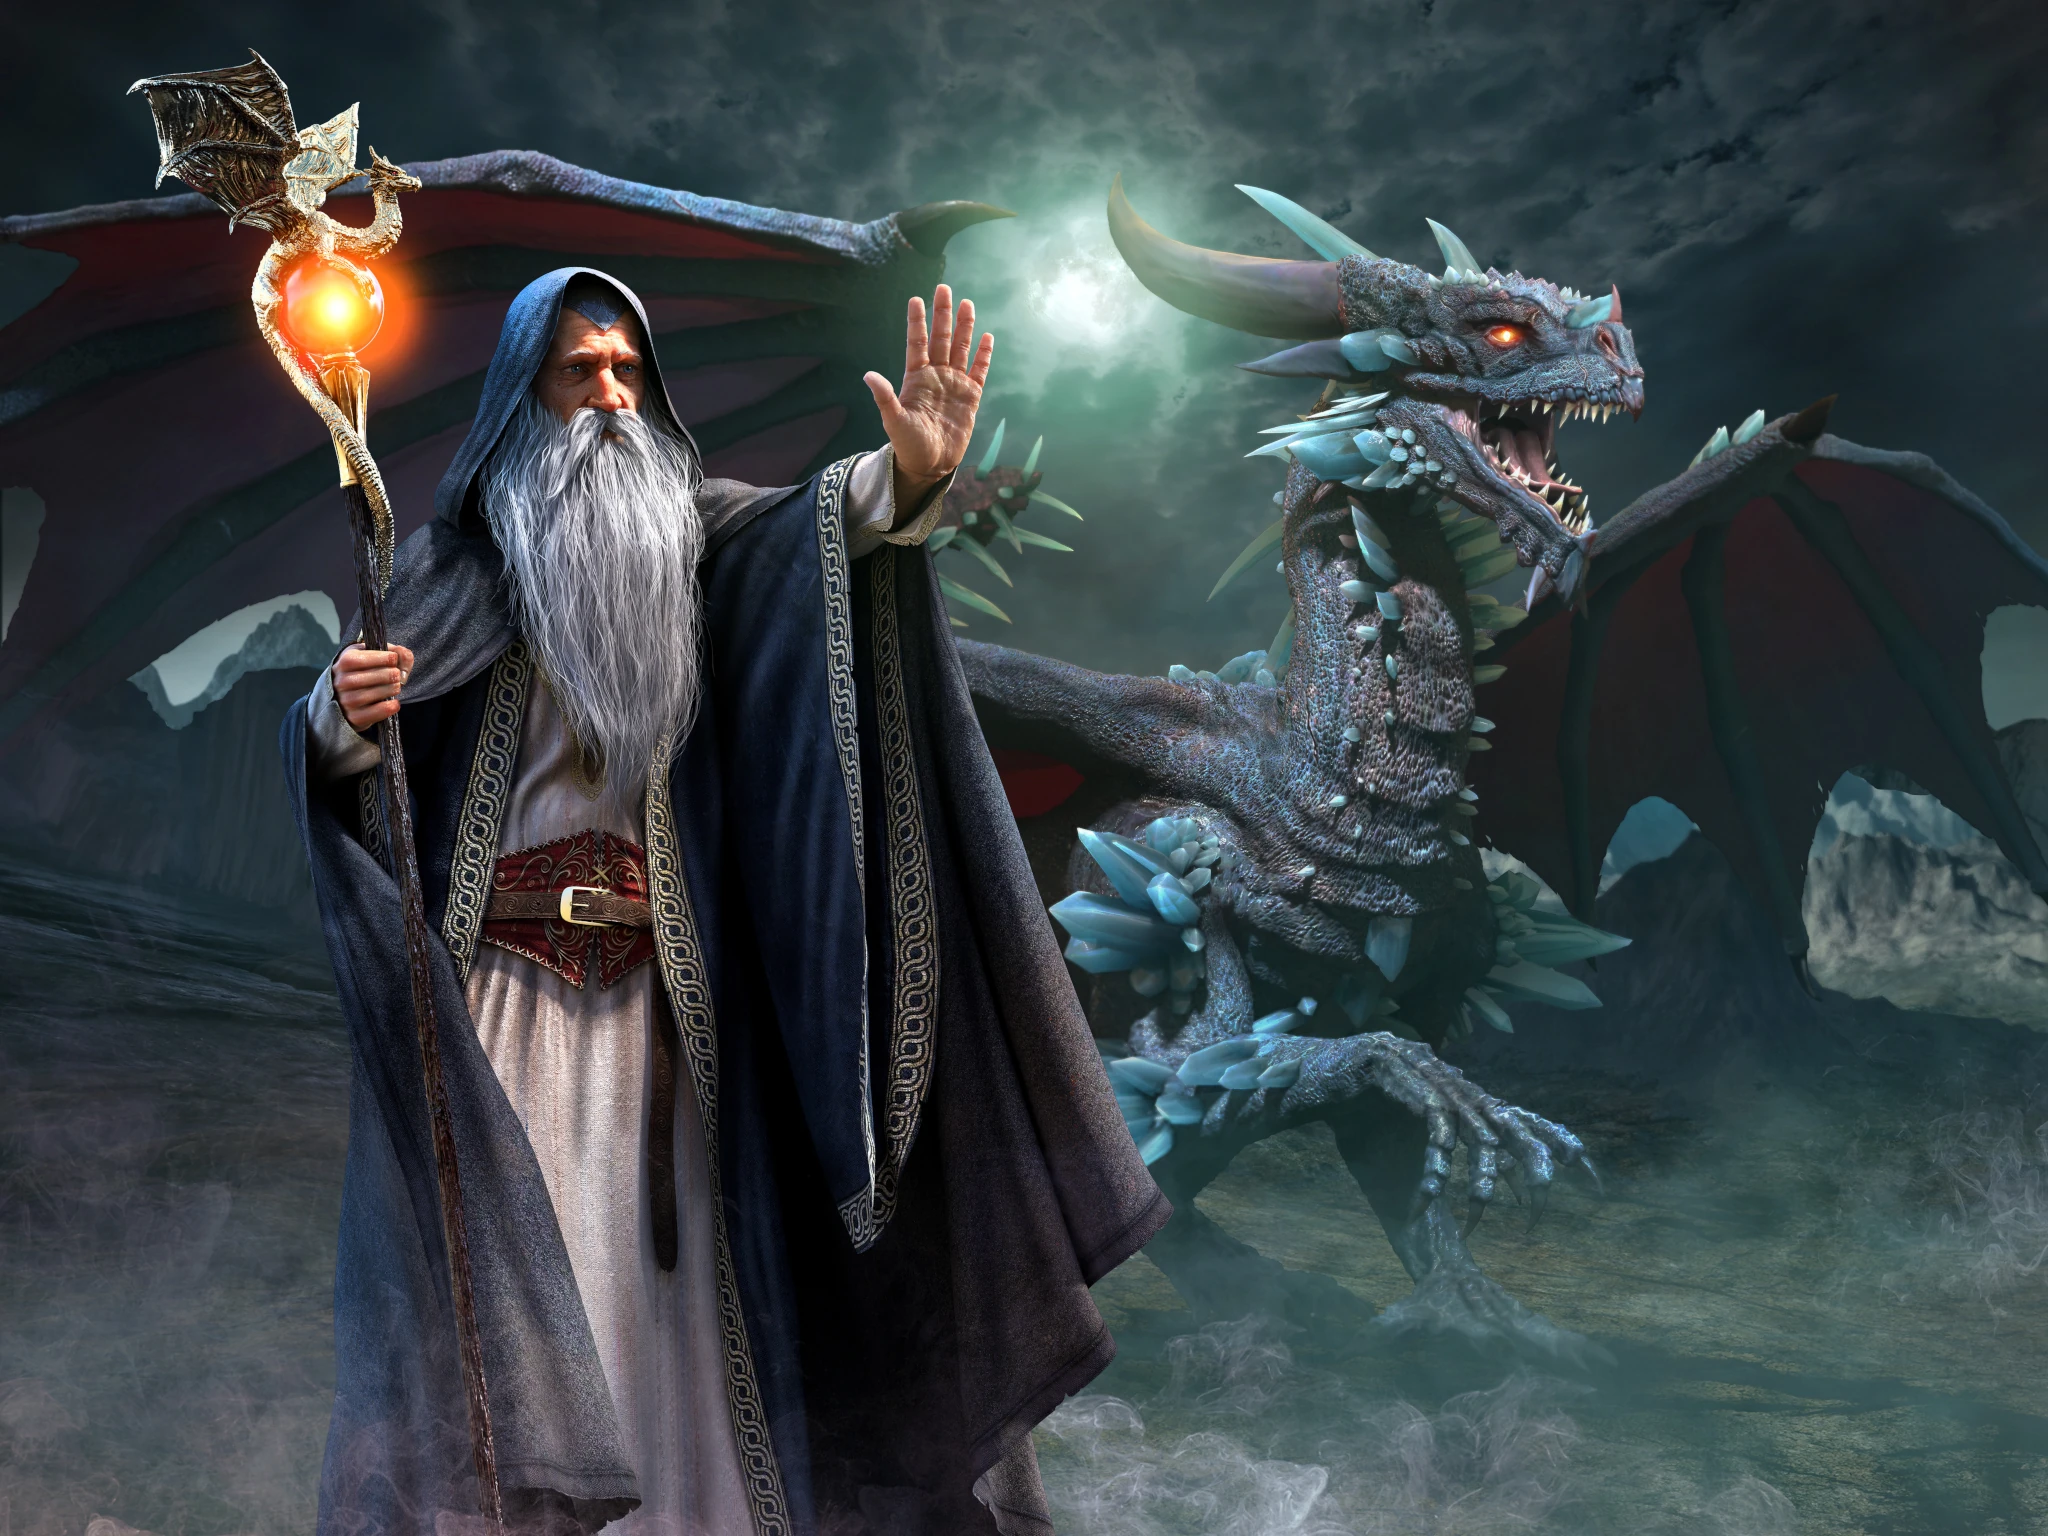 Dragon et sorcier, image illustrée parc d'attractions Fantassia